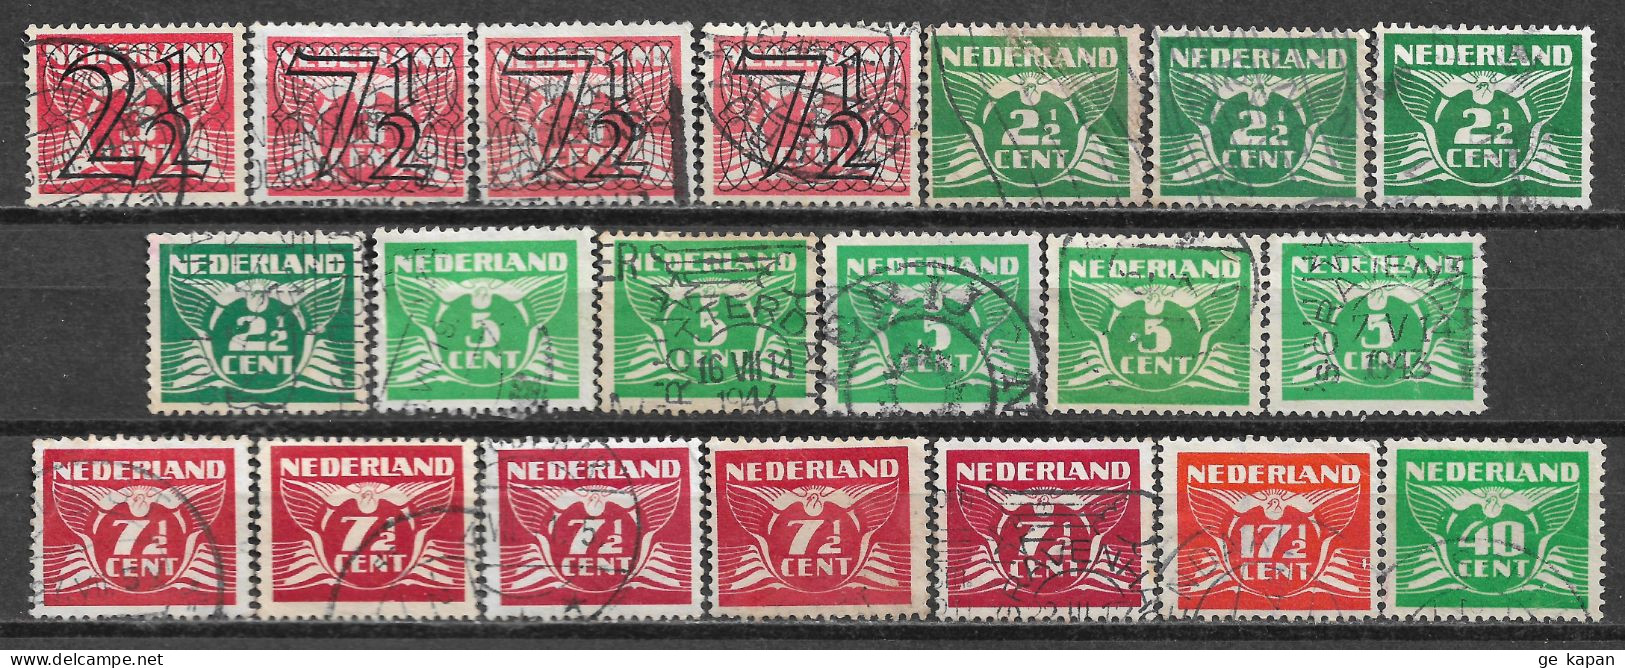 1940-1941 NETHERLANDS SET OF 20 USED STAMPS (Scott # 226,228,243A,243C,243E,243K,243P) CV $4.60 - Usados